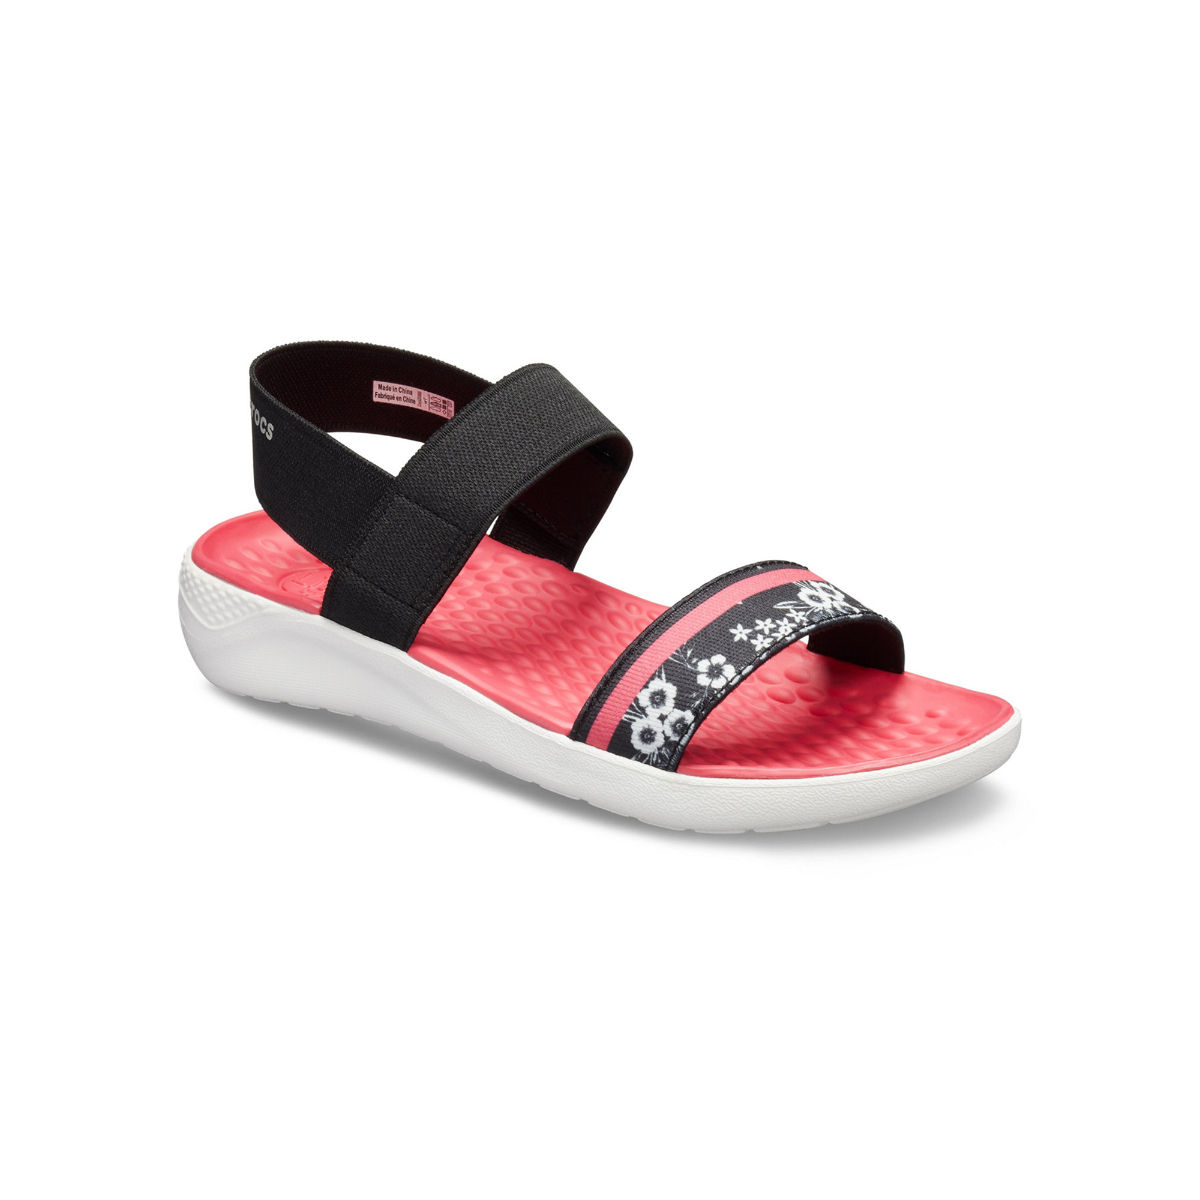 CROCS LiteRide Slide Relaxed Fit Black Unisex-M7- W9 Sandals Slides Shoes  for sale online | eBay